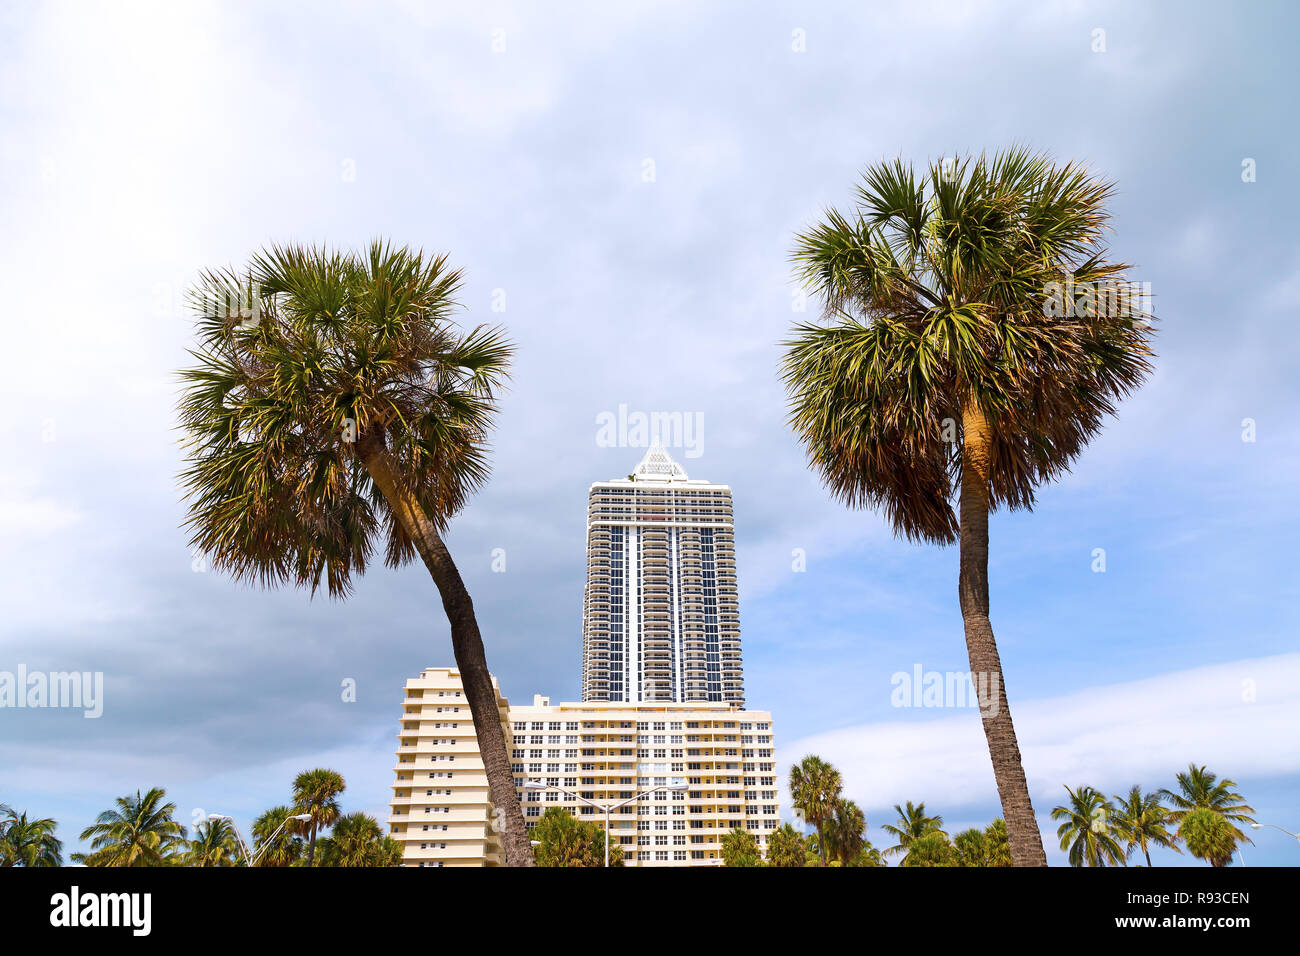 Ciel bleu et nuages gris sur Miami Beach Palms et bâtiments. De grands palmiers en face de Miami Beach waterfront resort. Banque D'Images